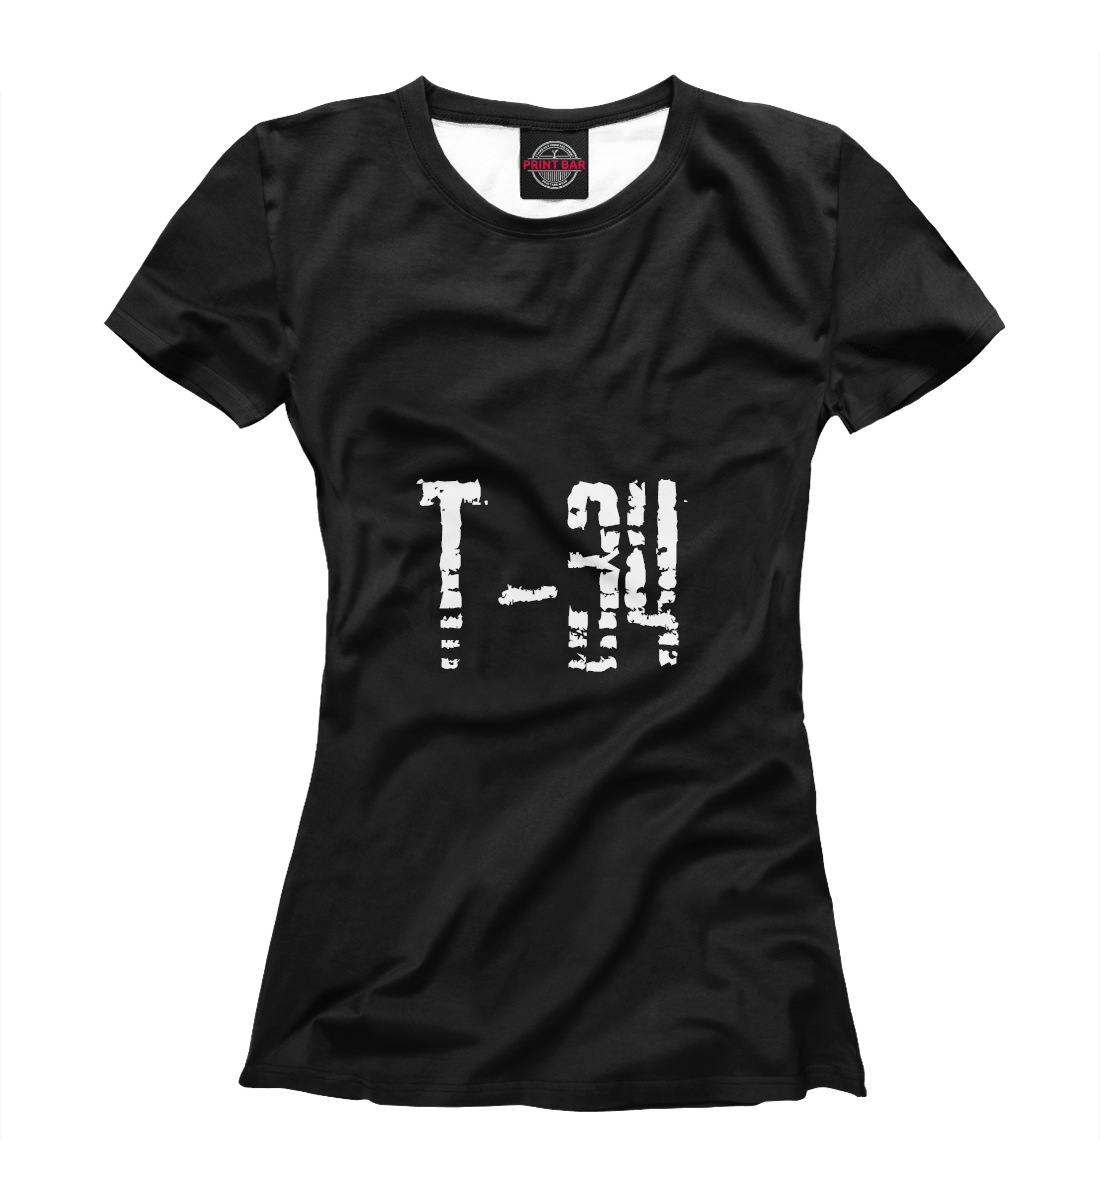 Футболка Т-34 для девочек, артикул: TNK-764578-fut-1mp